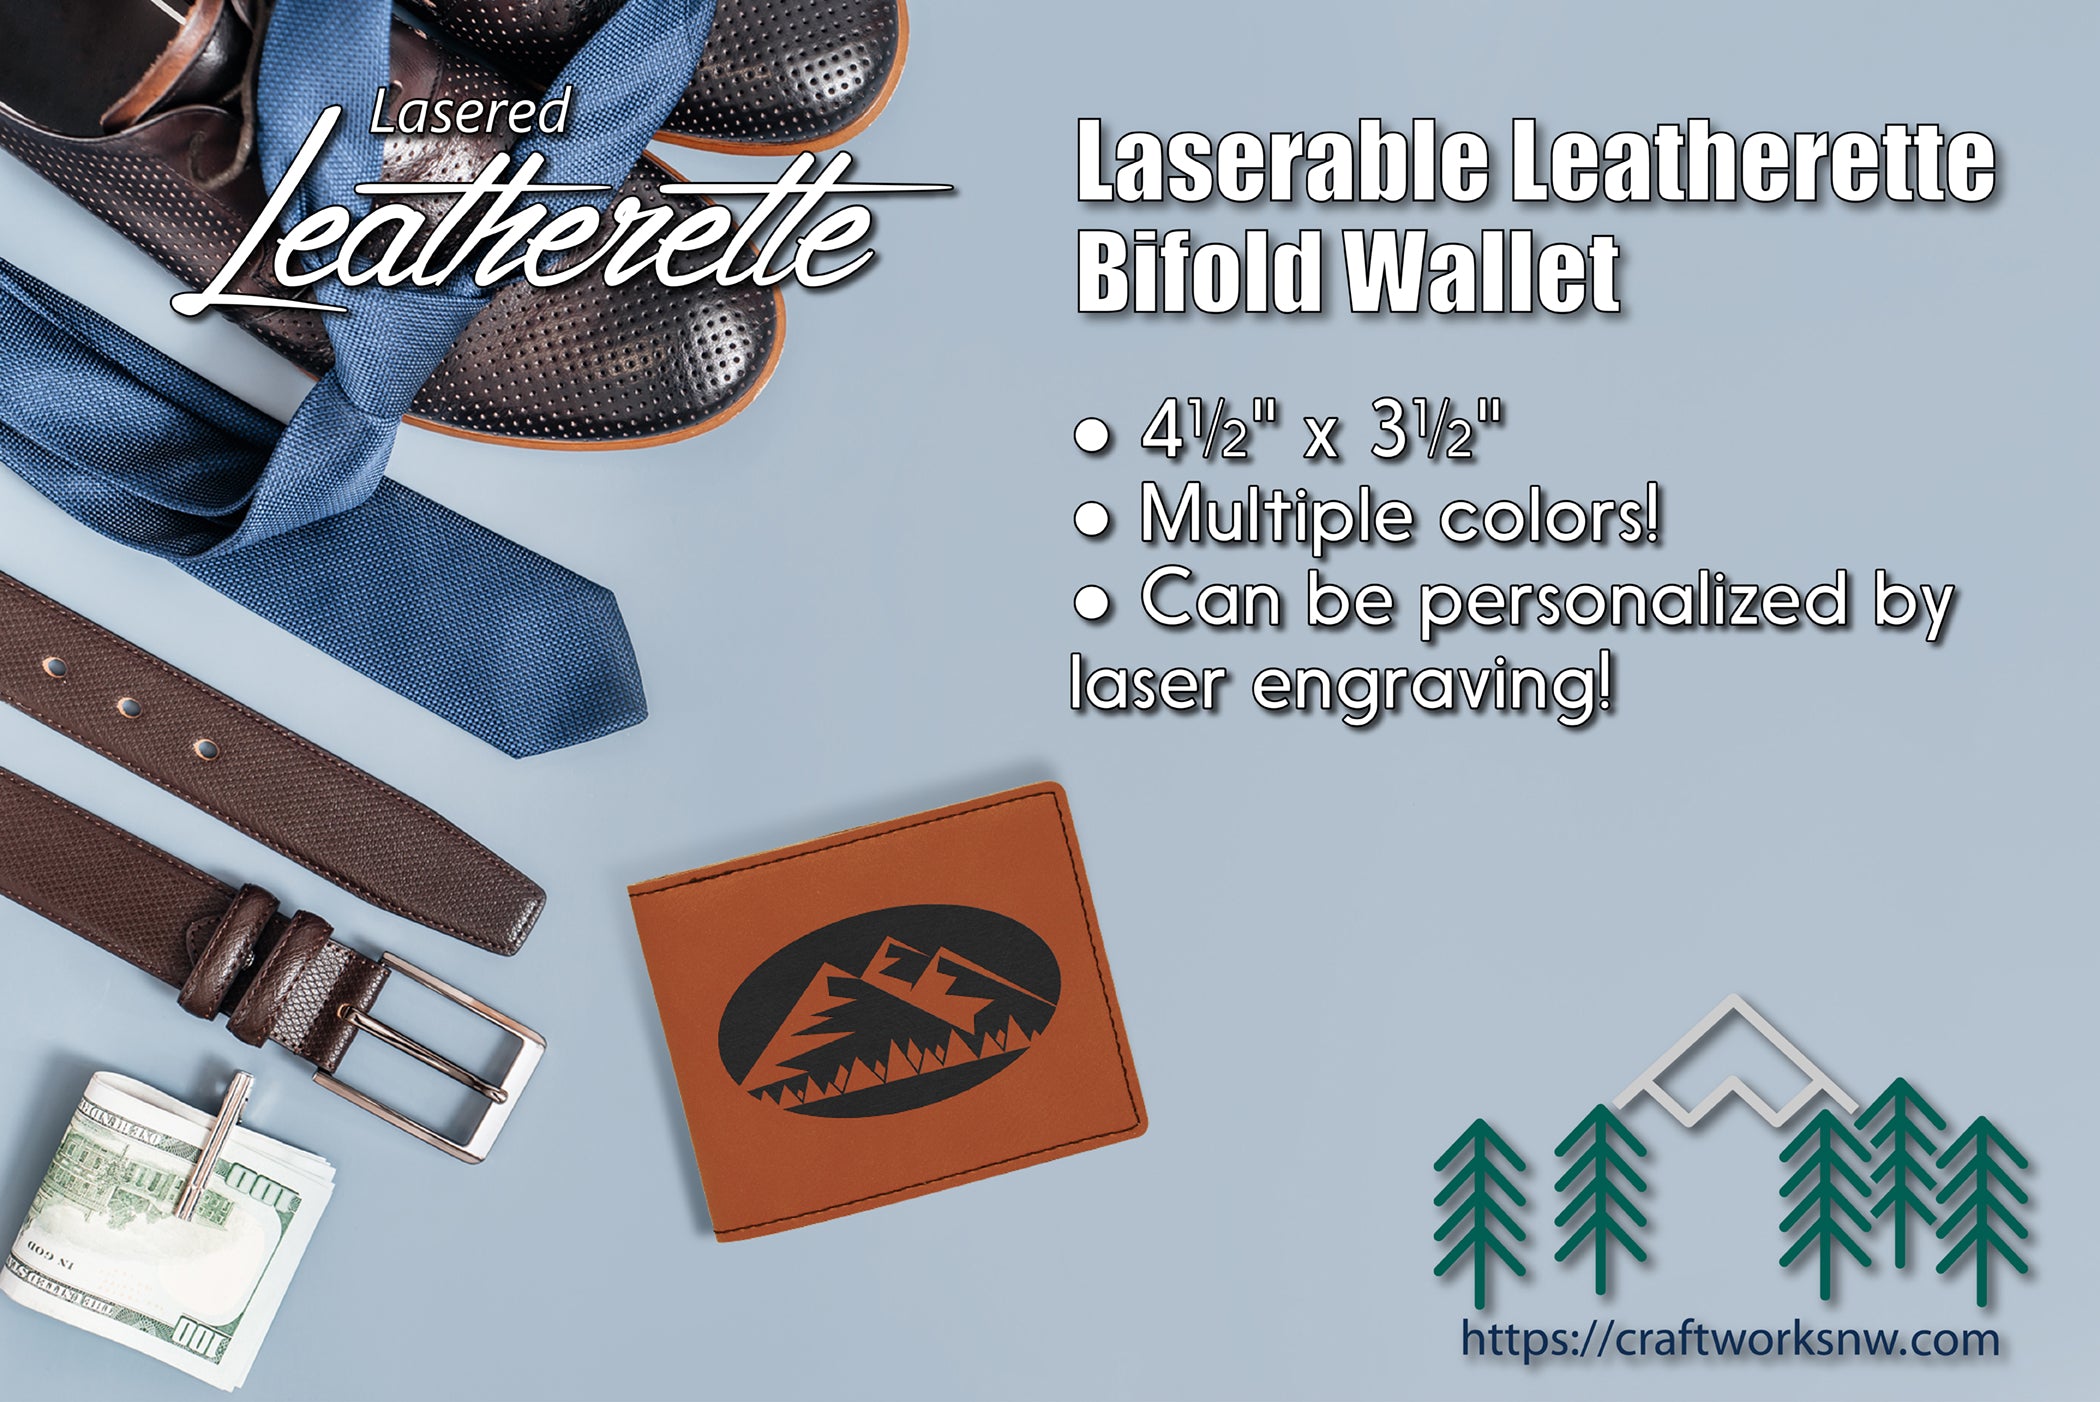 Bifold Wallet Laserable Leatherette, Laser Engraved - Craftworks NW, LLC